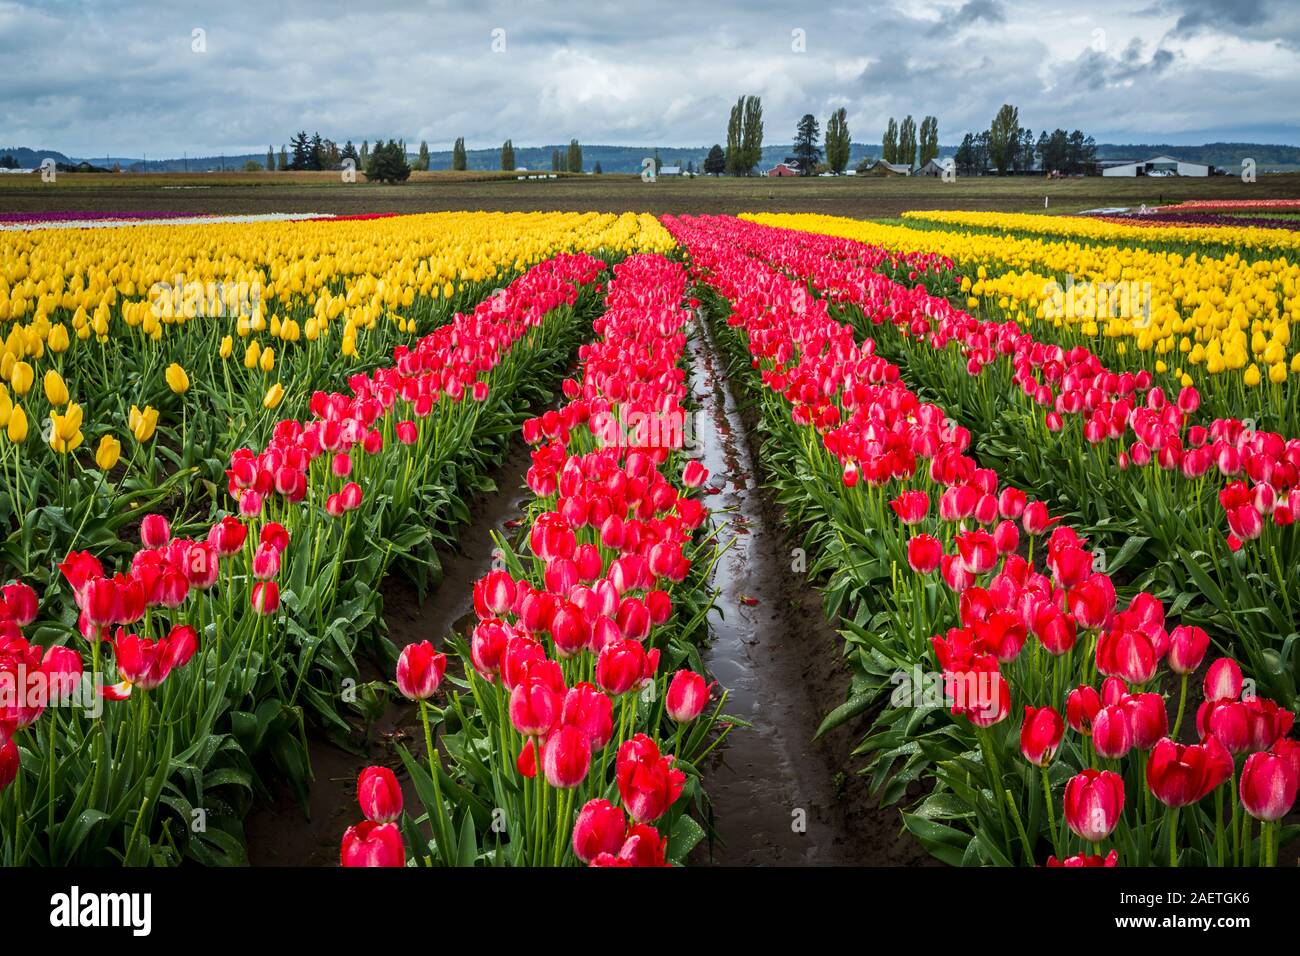 Les champs de tulipes Roozengaarde près de Mount Vernon, Washington, USA. Banque D'Images